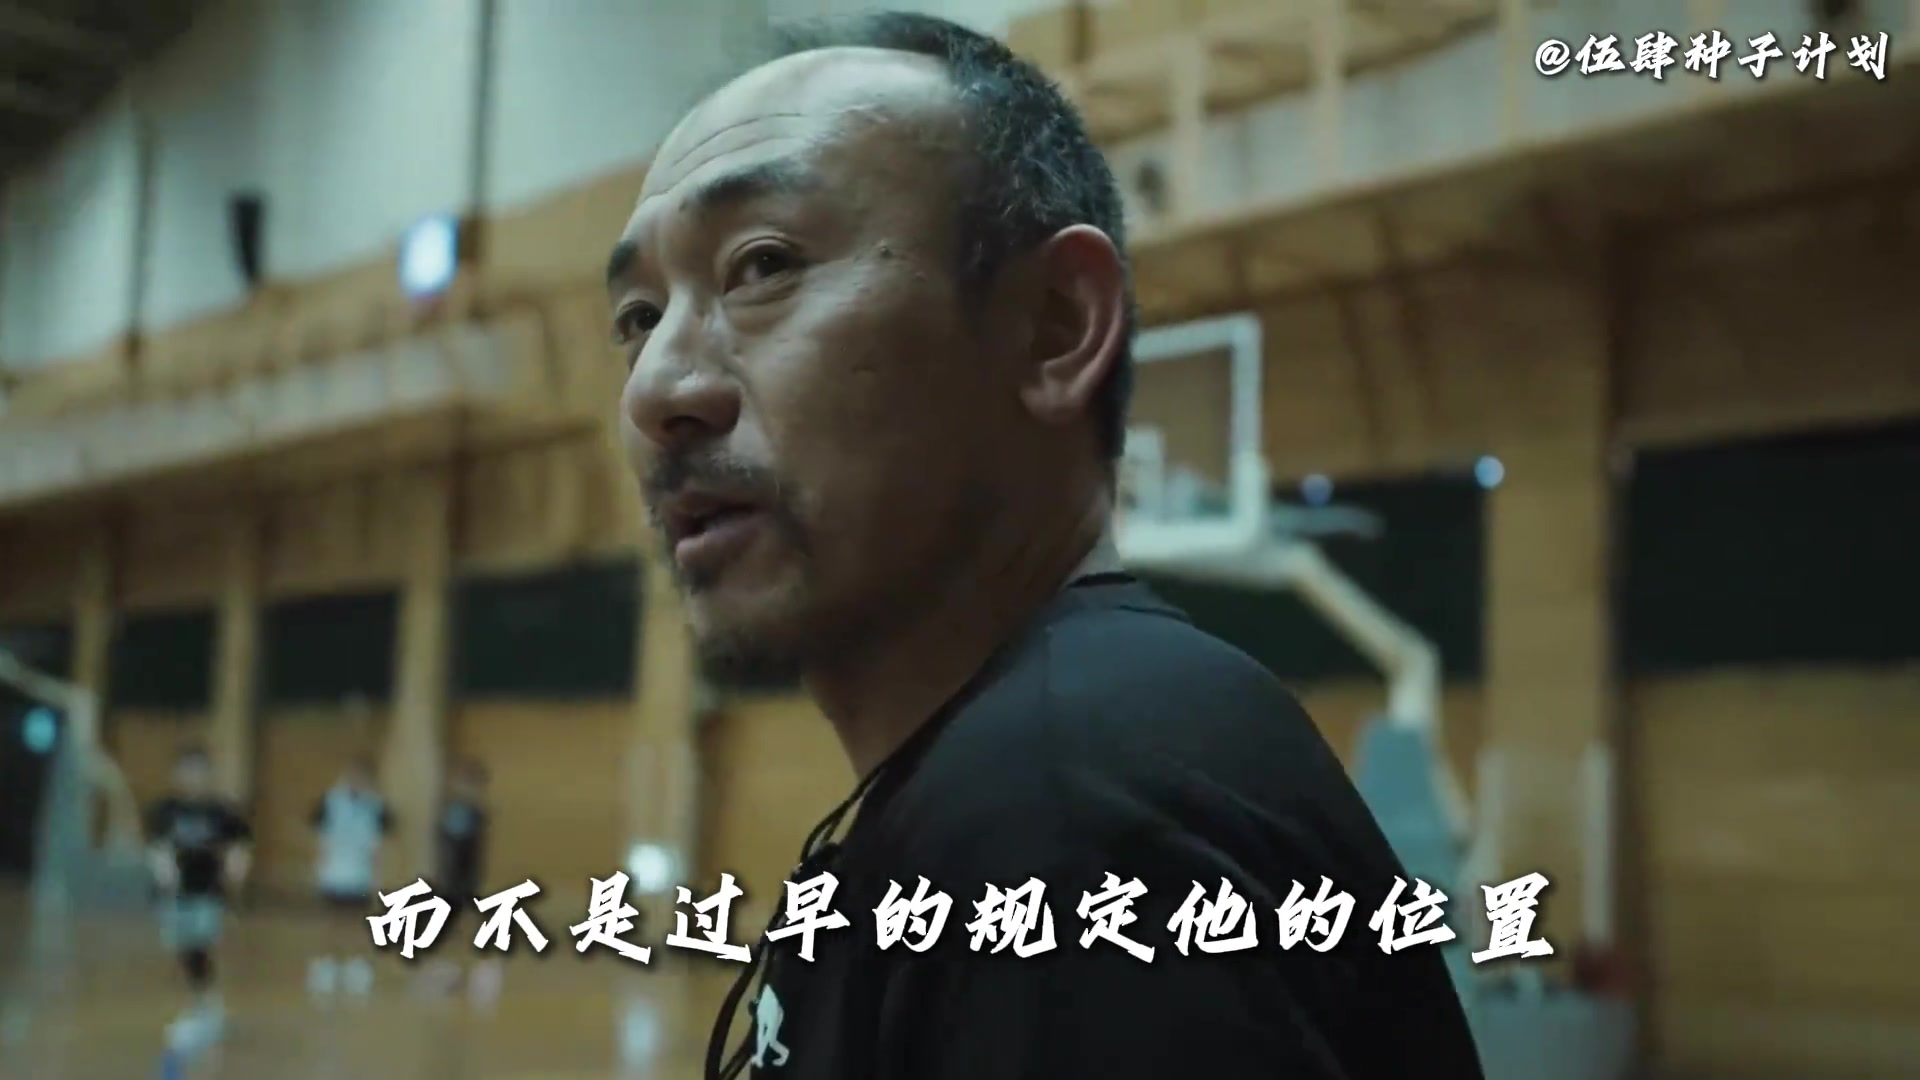 日本篮球教练：中国球员身材非常高大我们矮个子多但只要够热爱就可以打球